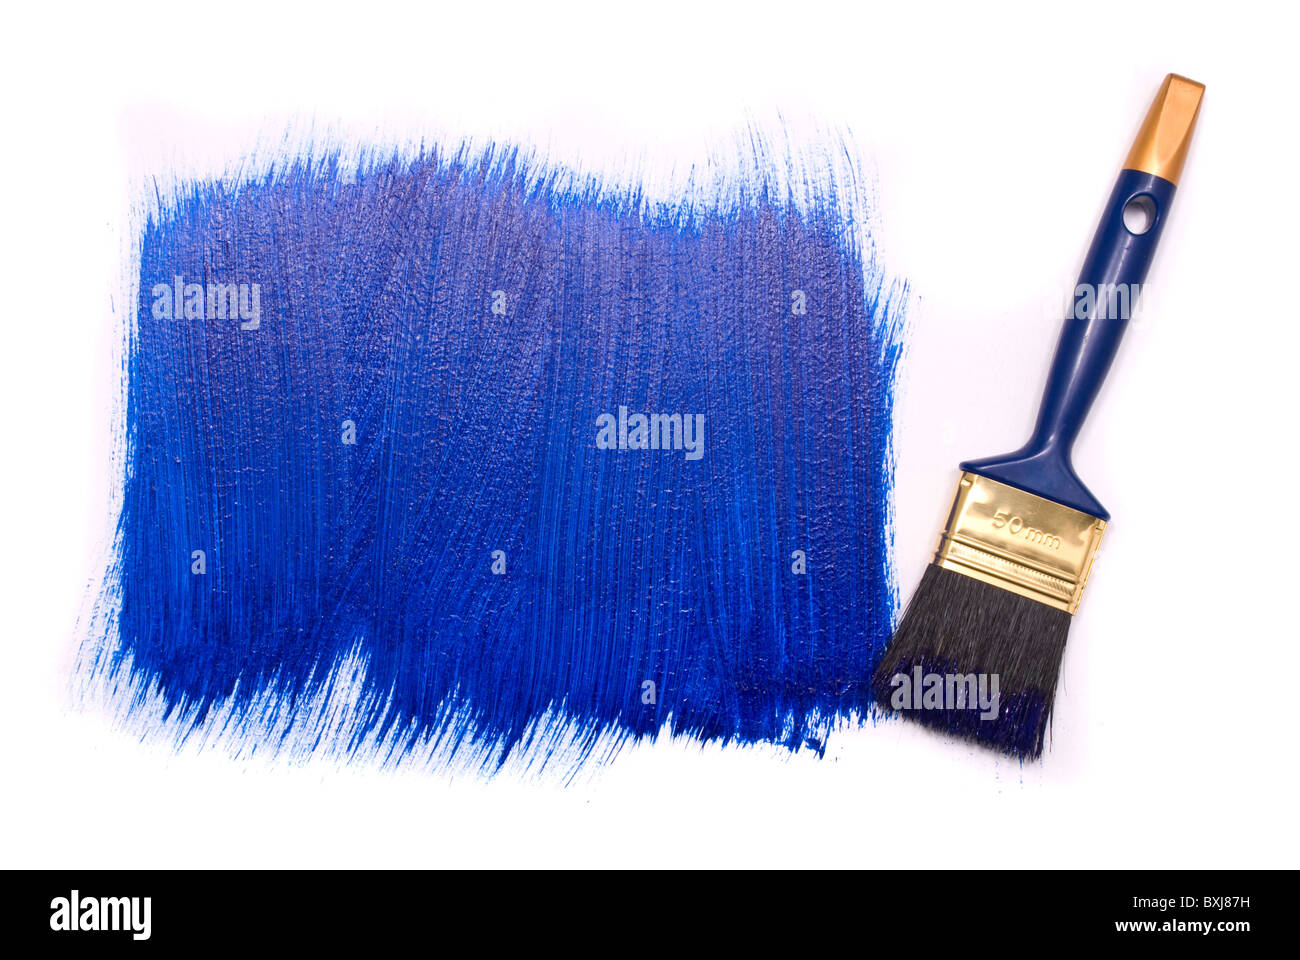 Cepillos profesionales de pintura azul sobre un fondo blanco. Foto de stock